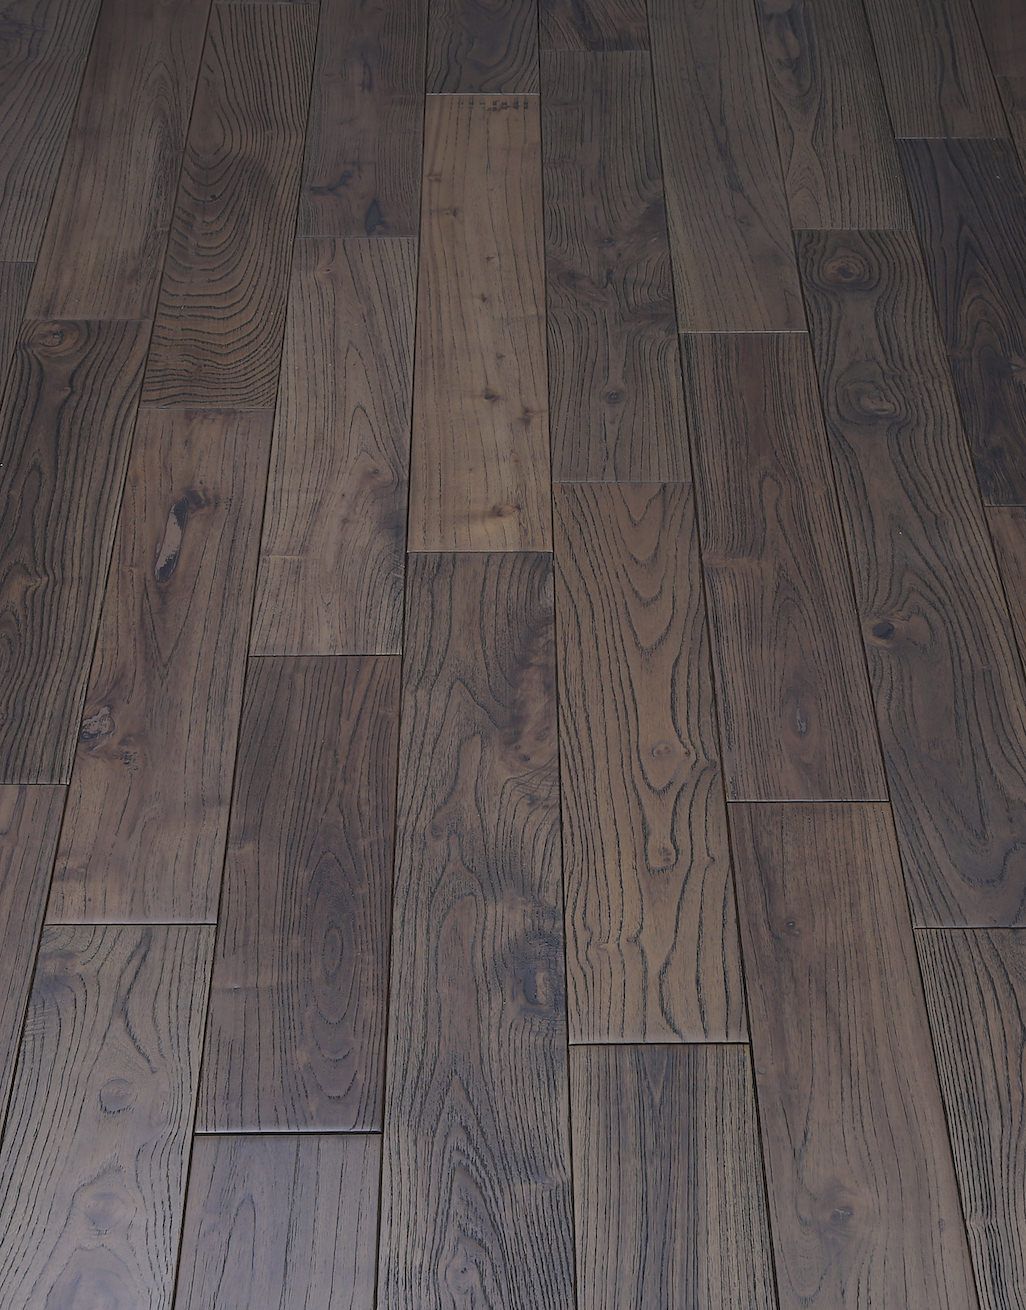 Aged Teak Lacquered Solid Wood Flooring, Hard Hardwood Flooring